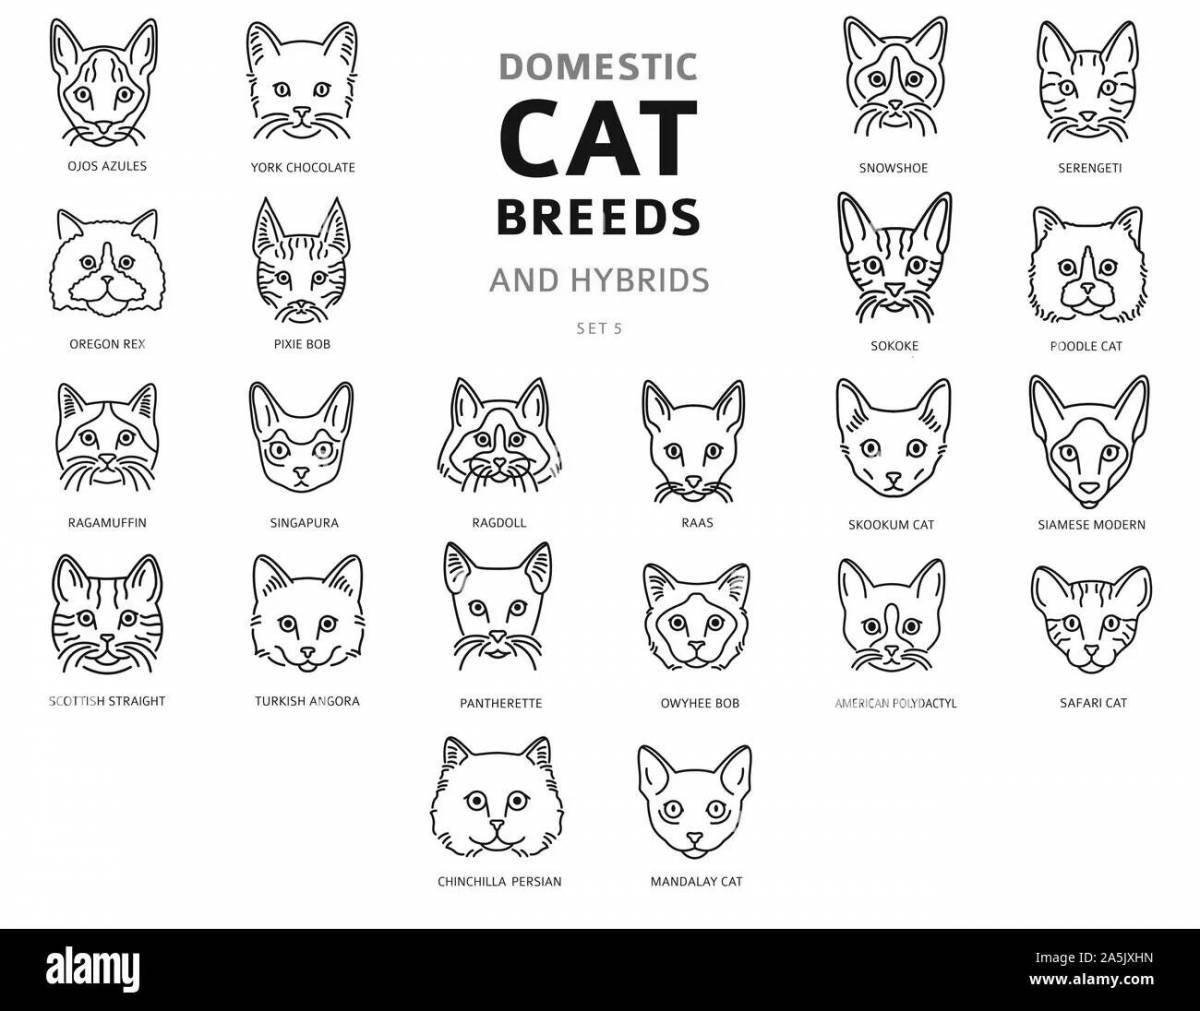 Яркая раскраска породы кошек с именами